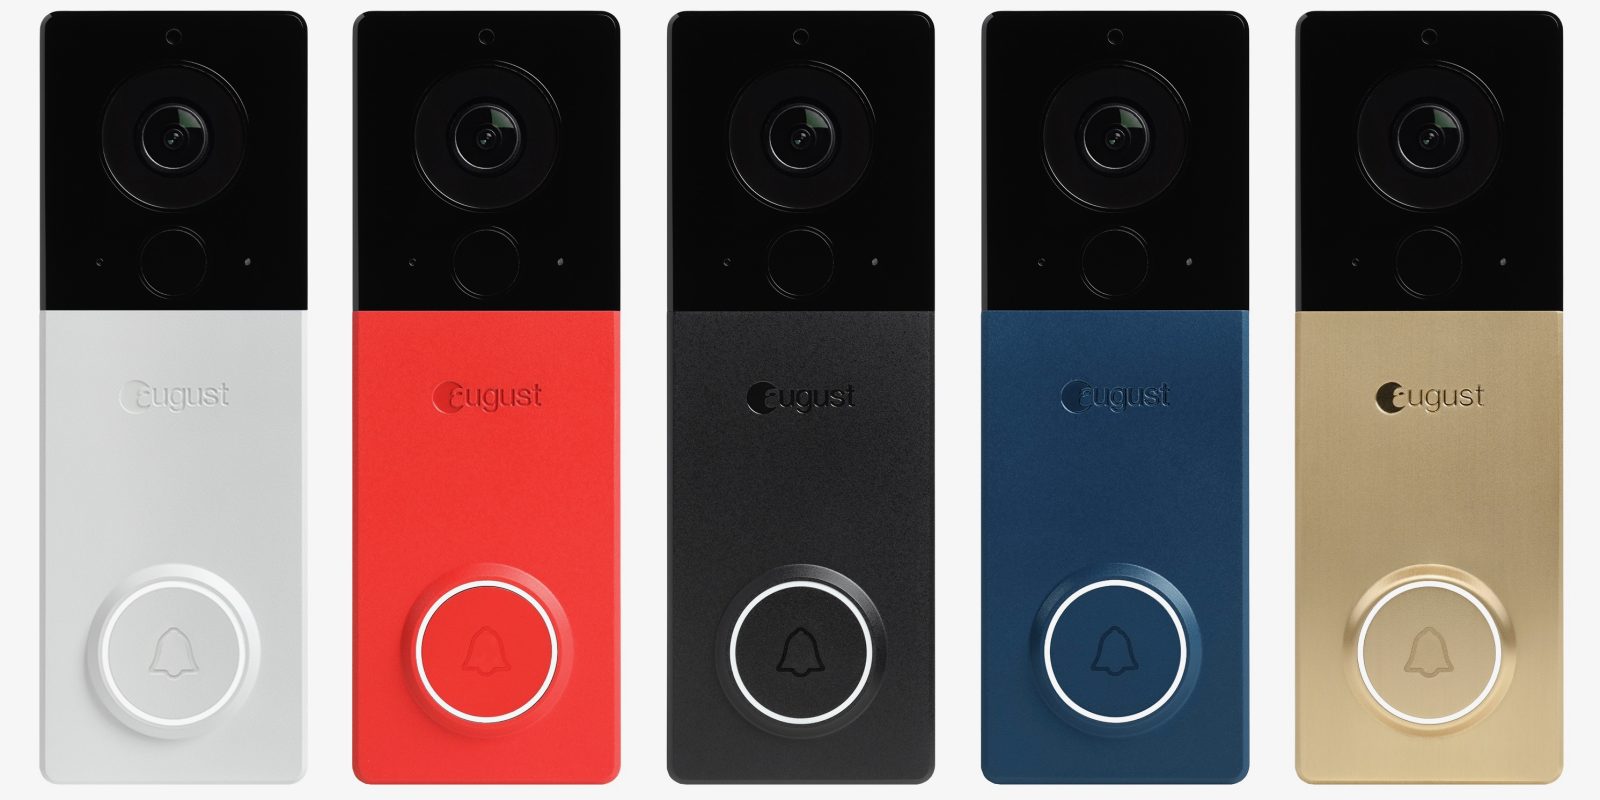 August View smart video doorbell